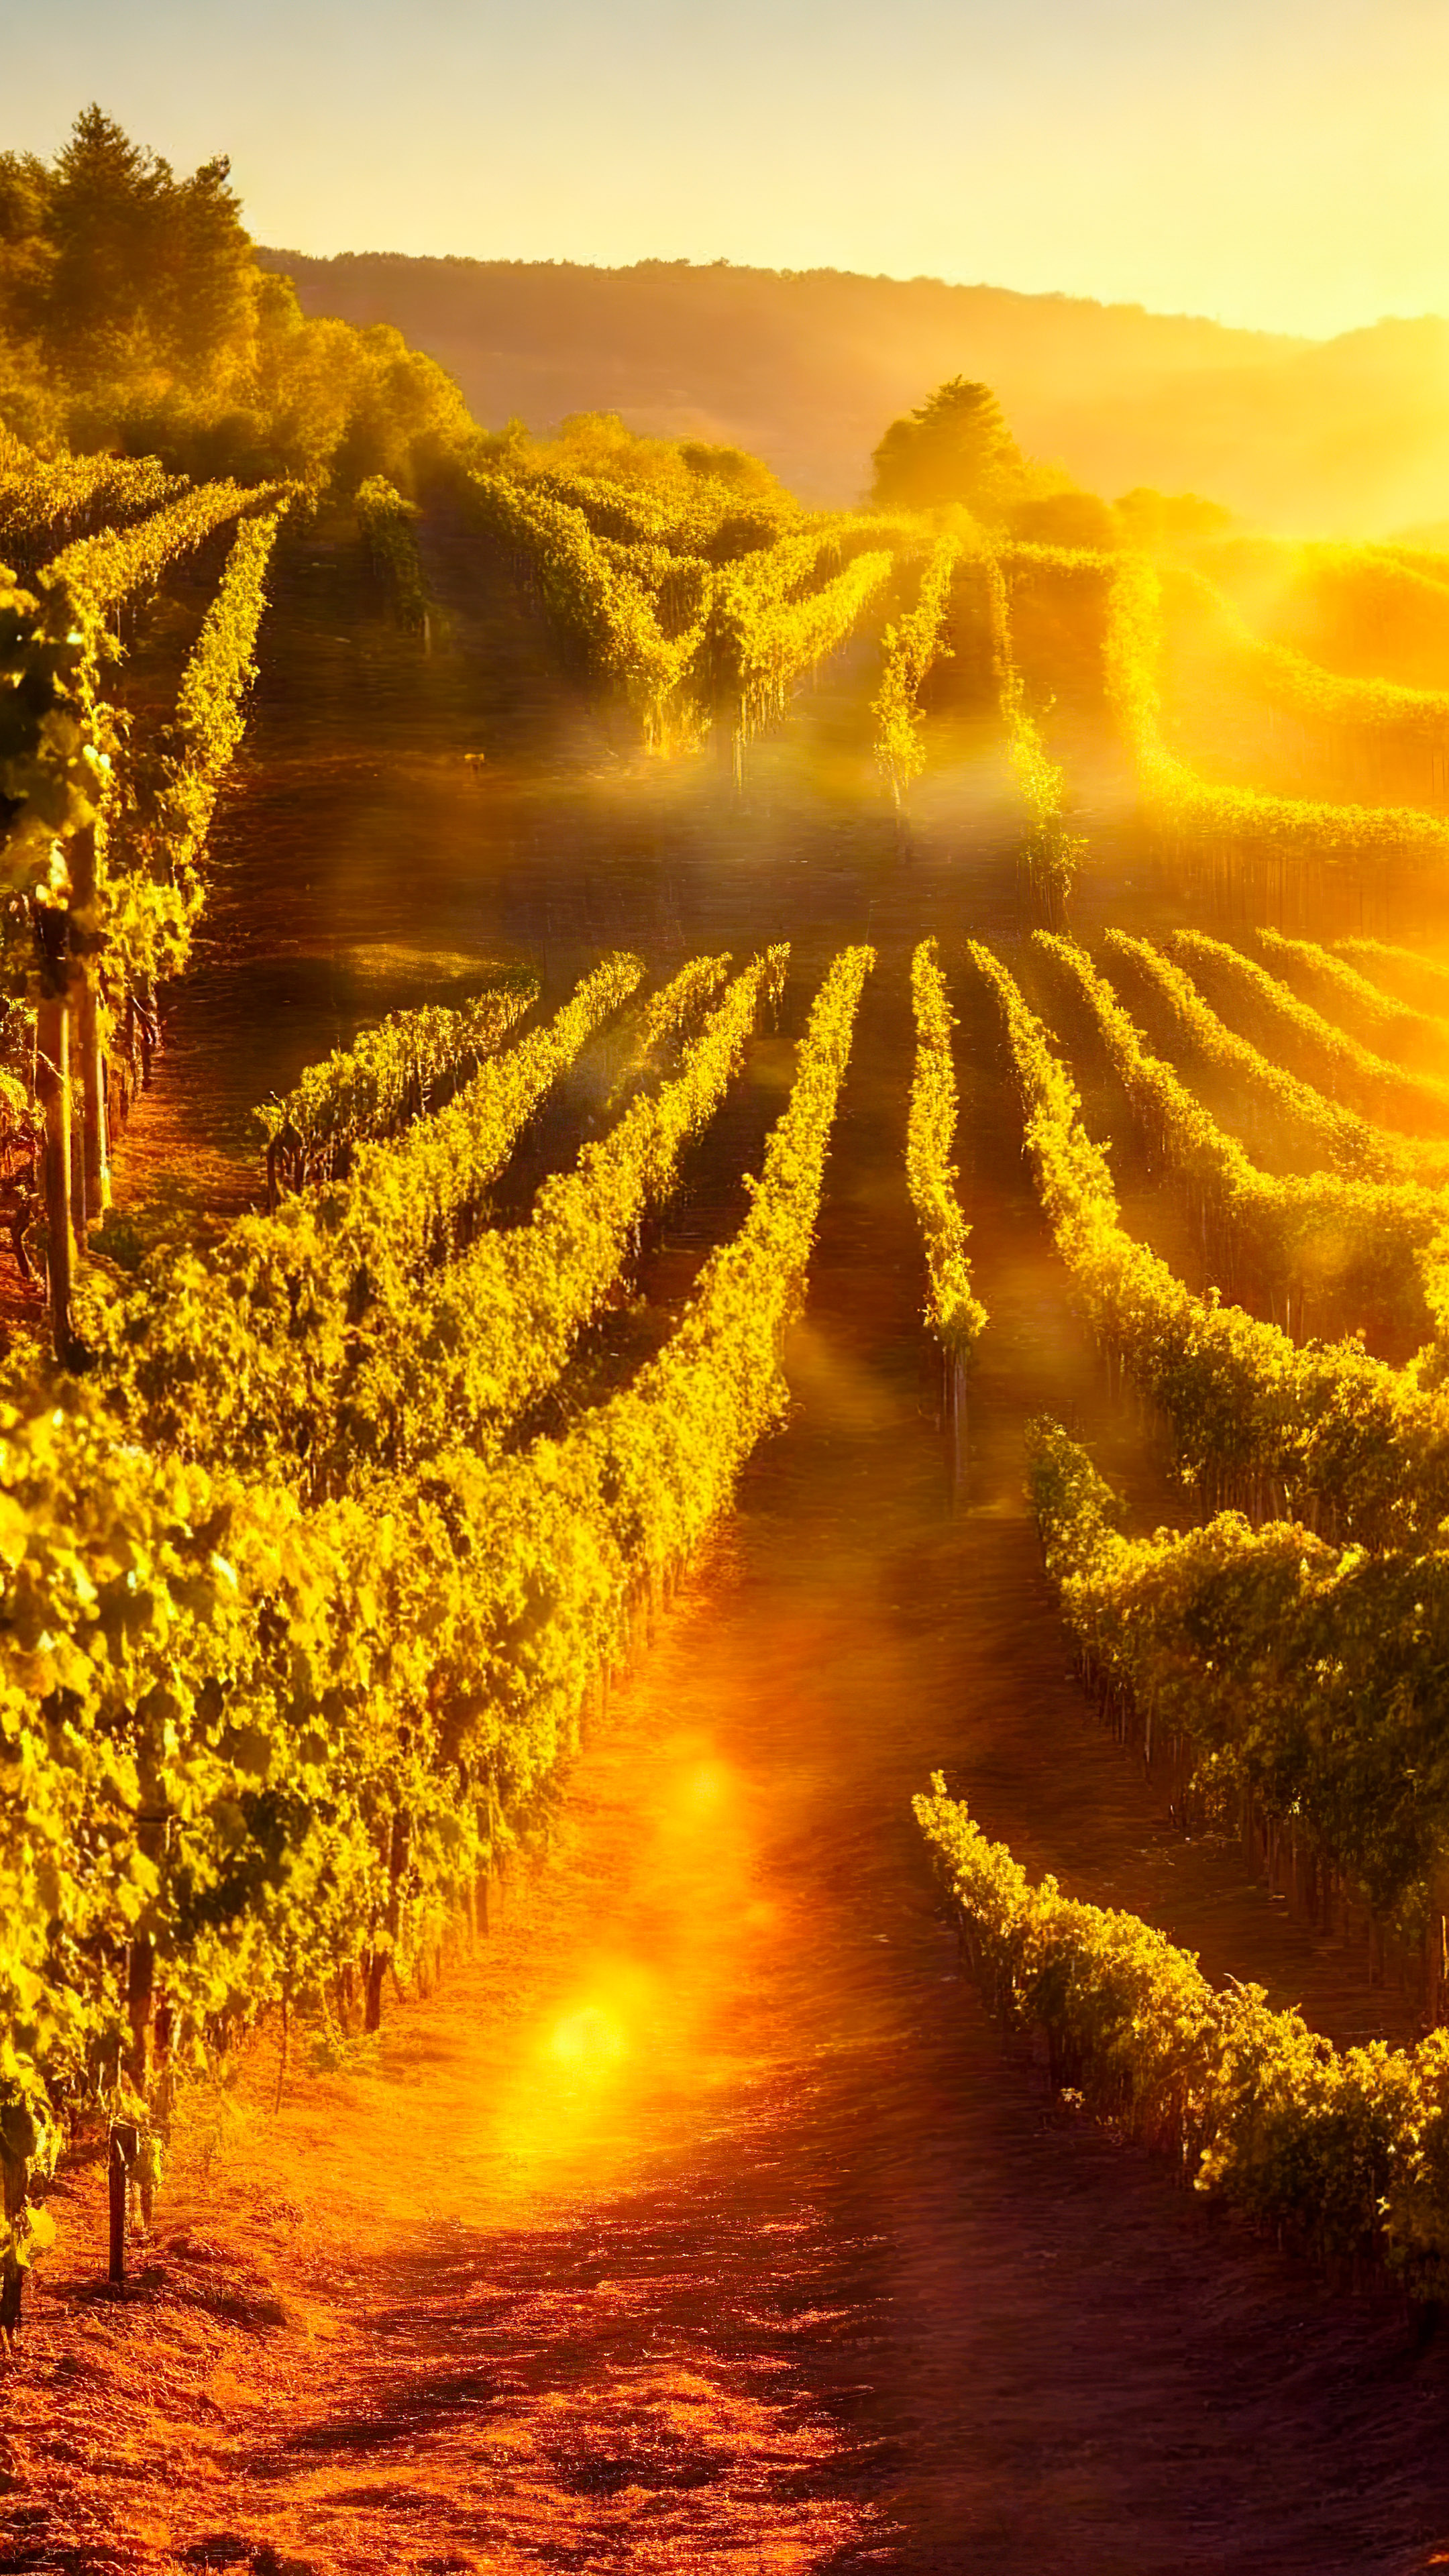 Profitez de la chaleur de notre fond d'écran de paysages pour iPhone XS, présentant un vignoble pittoresque baigné de soleil doré, avec des rangées de vignes s'étendant à l'horizon.